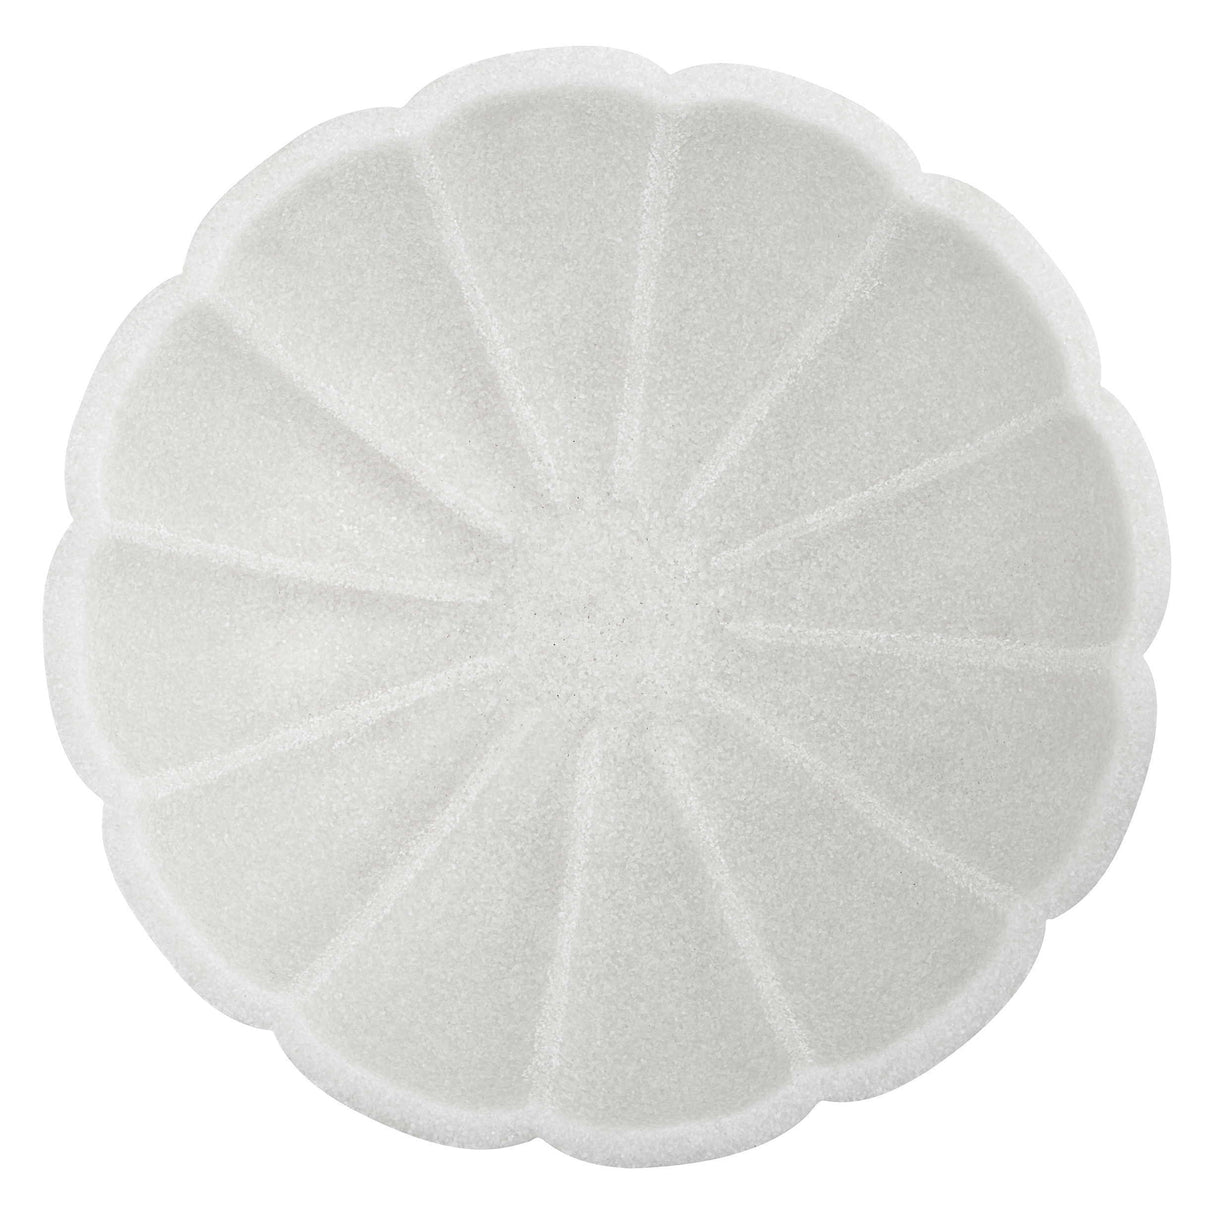 Petal - Bowl - White